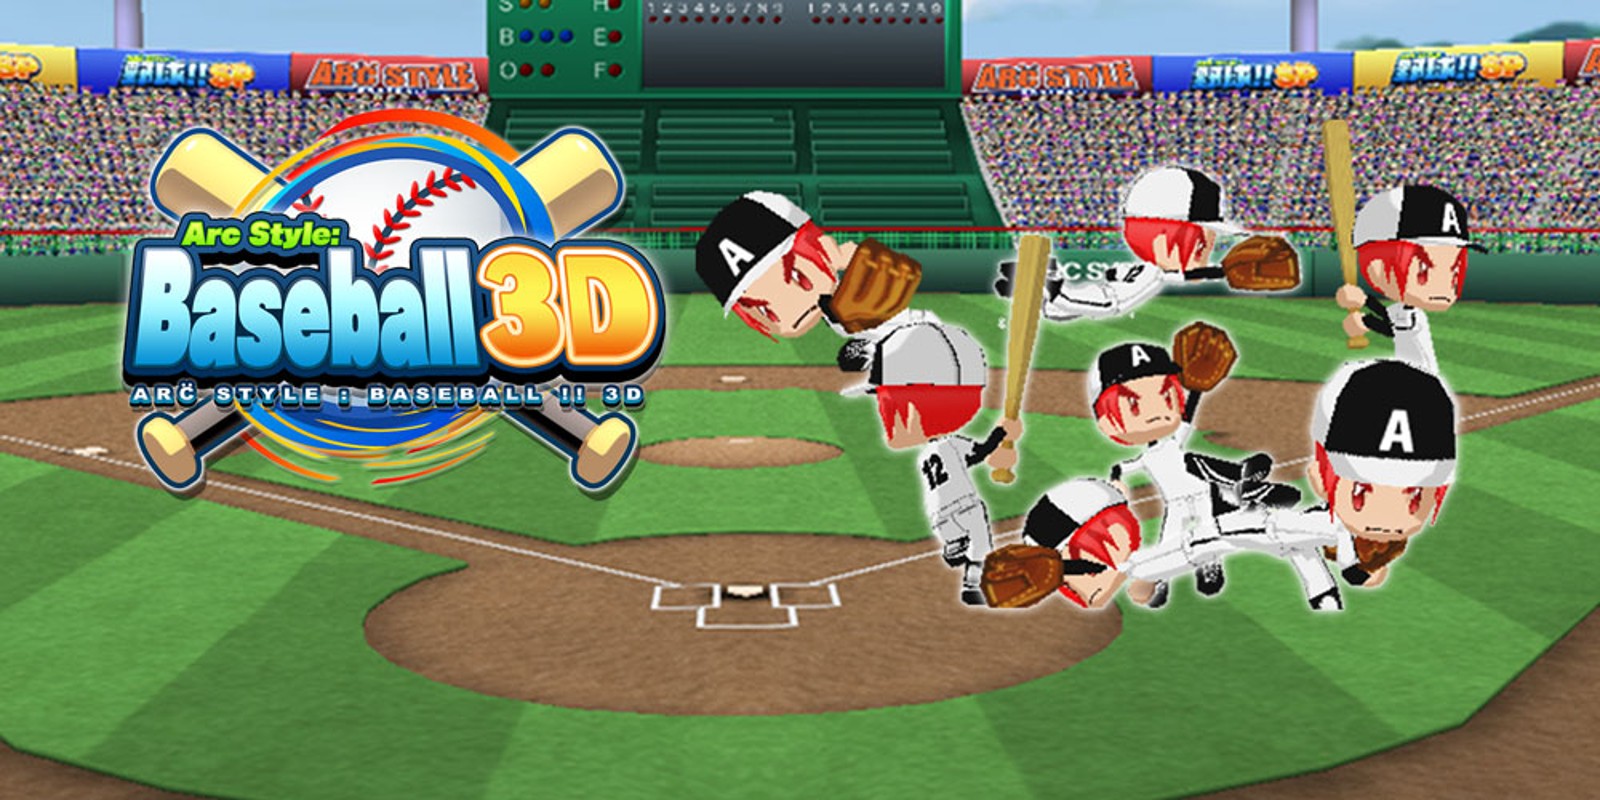 Бейсбол игра на Нинтендо. Arc Style - Baseball 3d 3ds. Лучшие игры для Nintendo на двоих игроков. Microsoft Baseball 3d 1998 Edition. Бейсбол 3